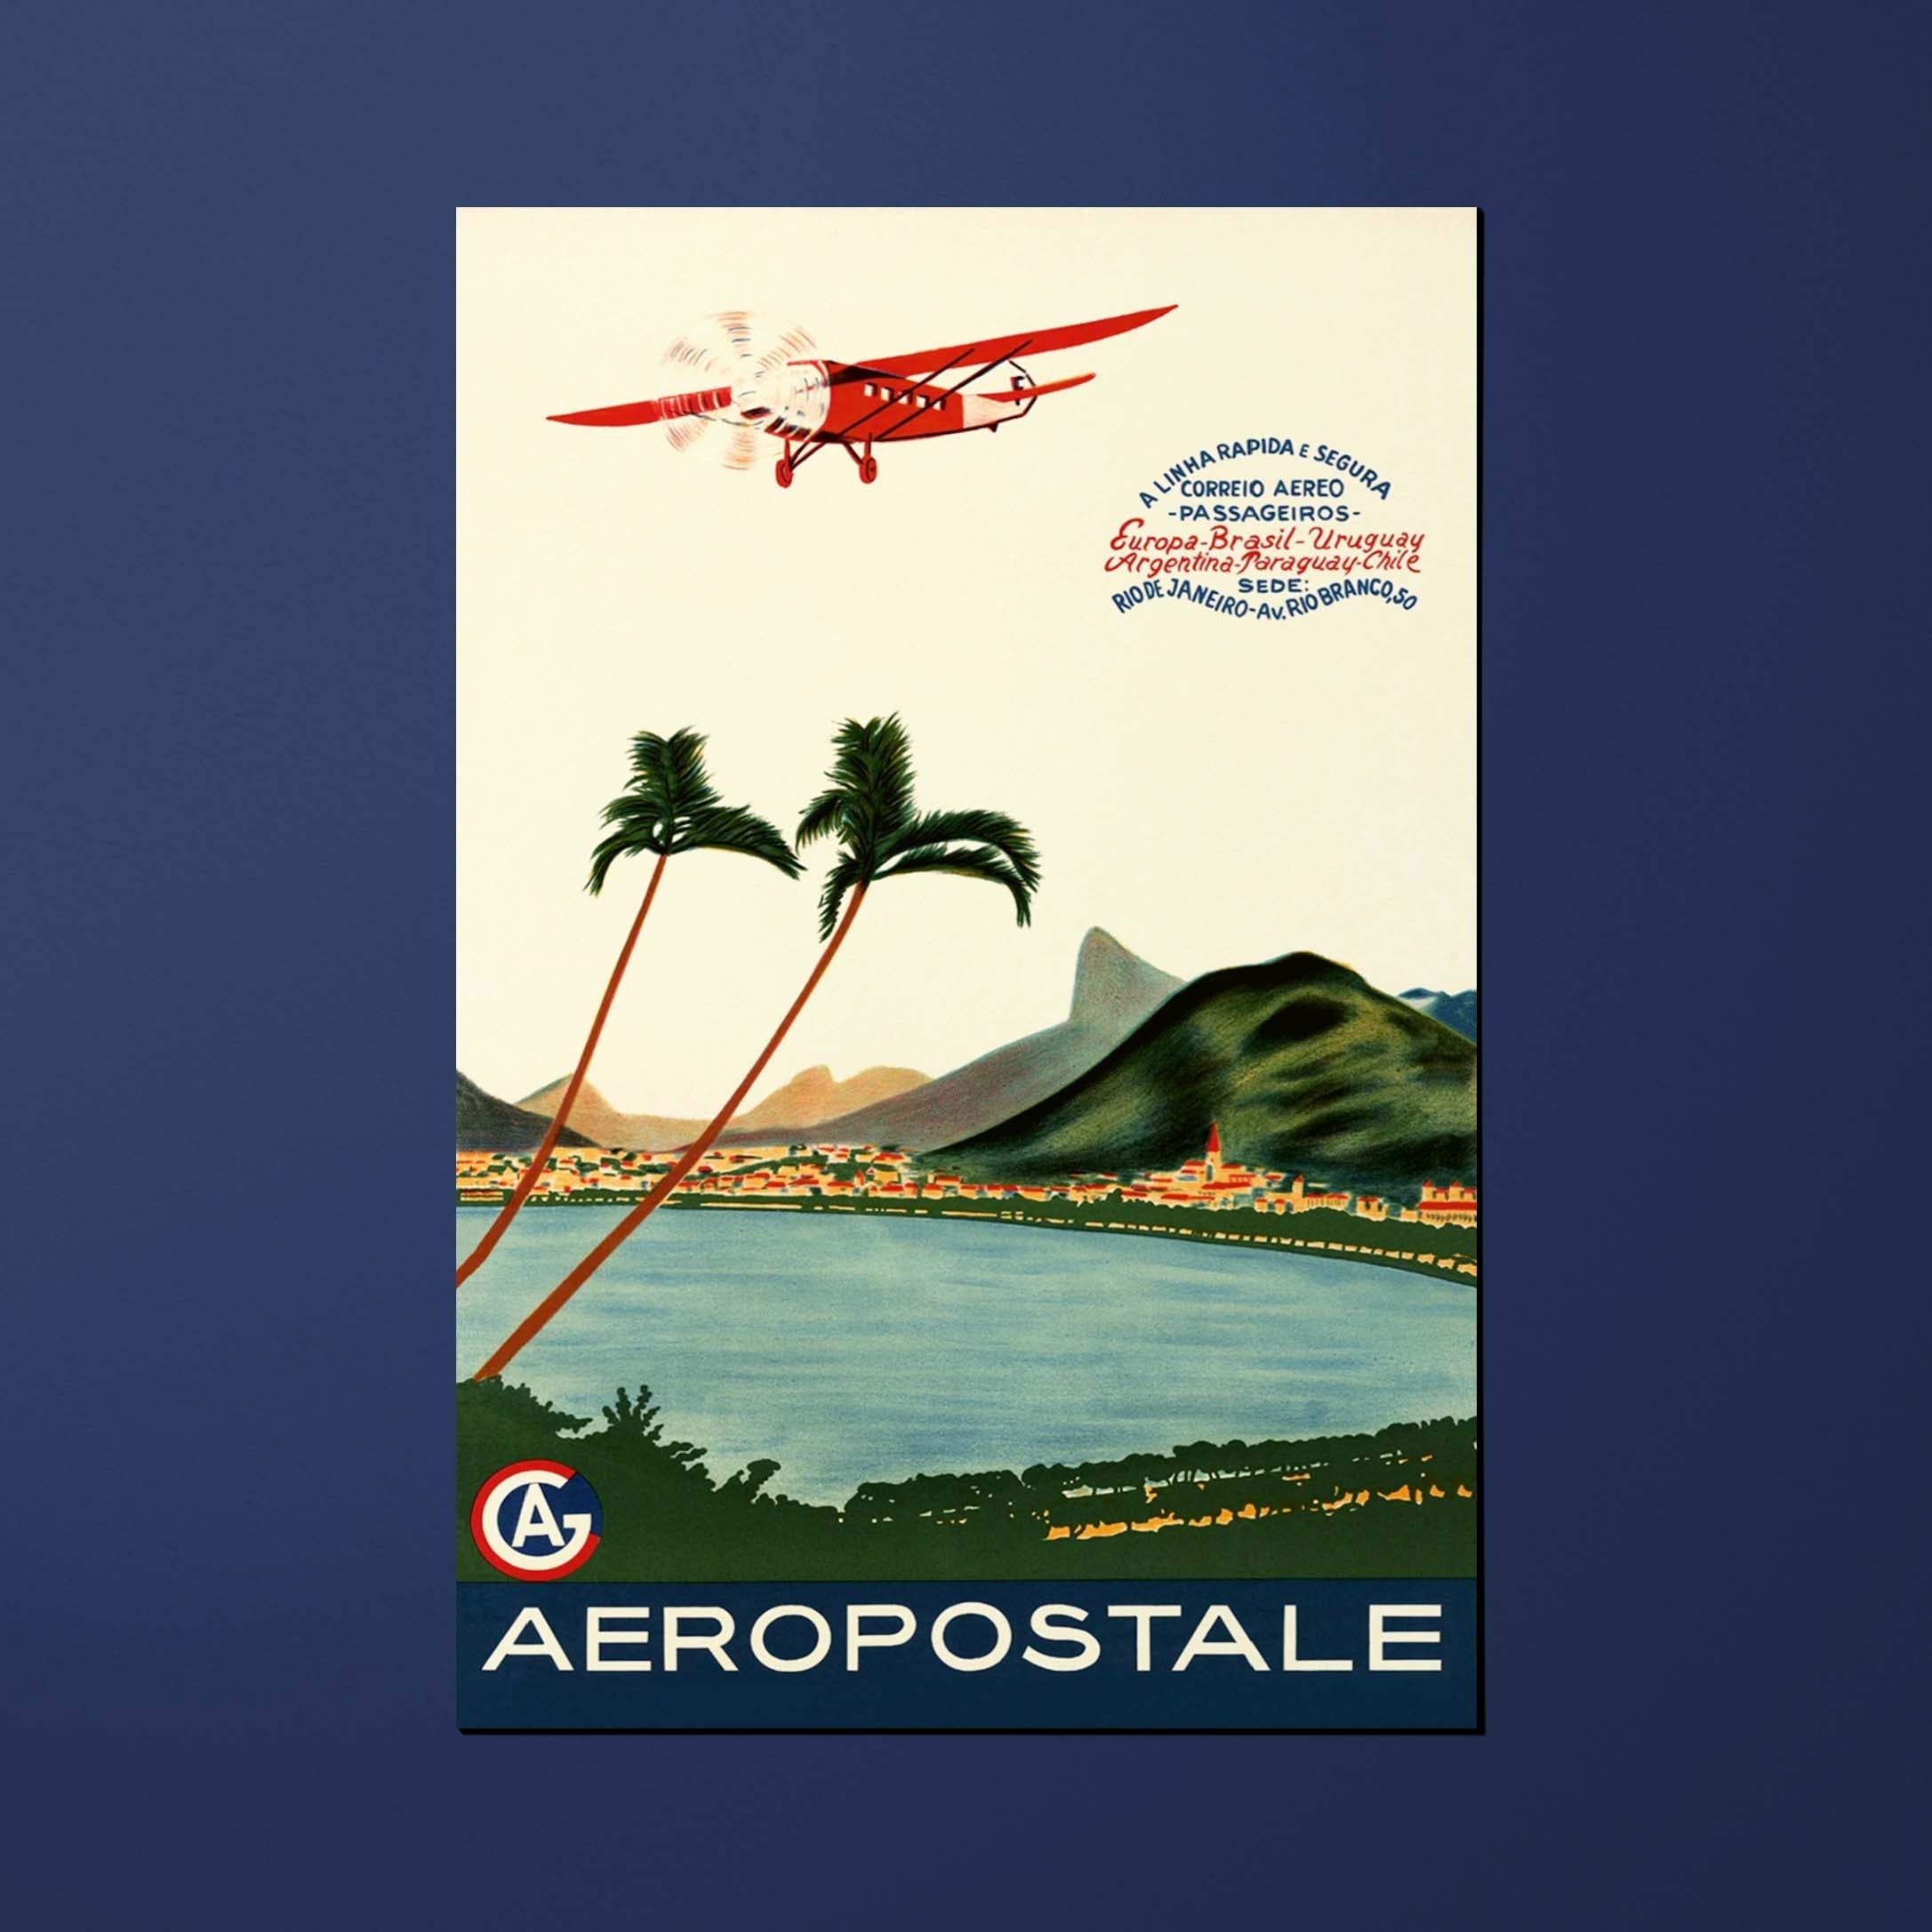 Postcard Air France Legend Aéropostale A linha rapida e segura